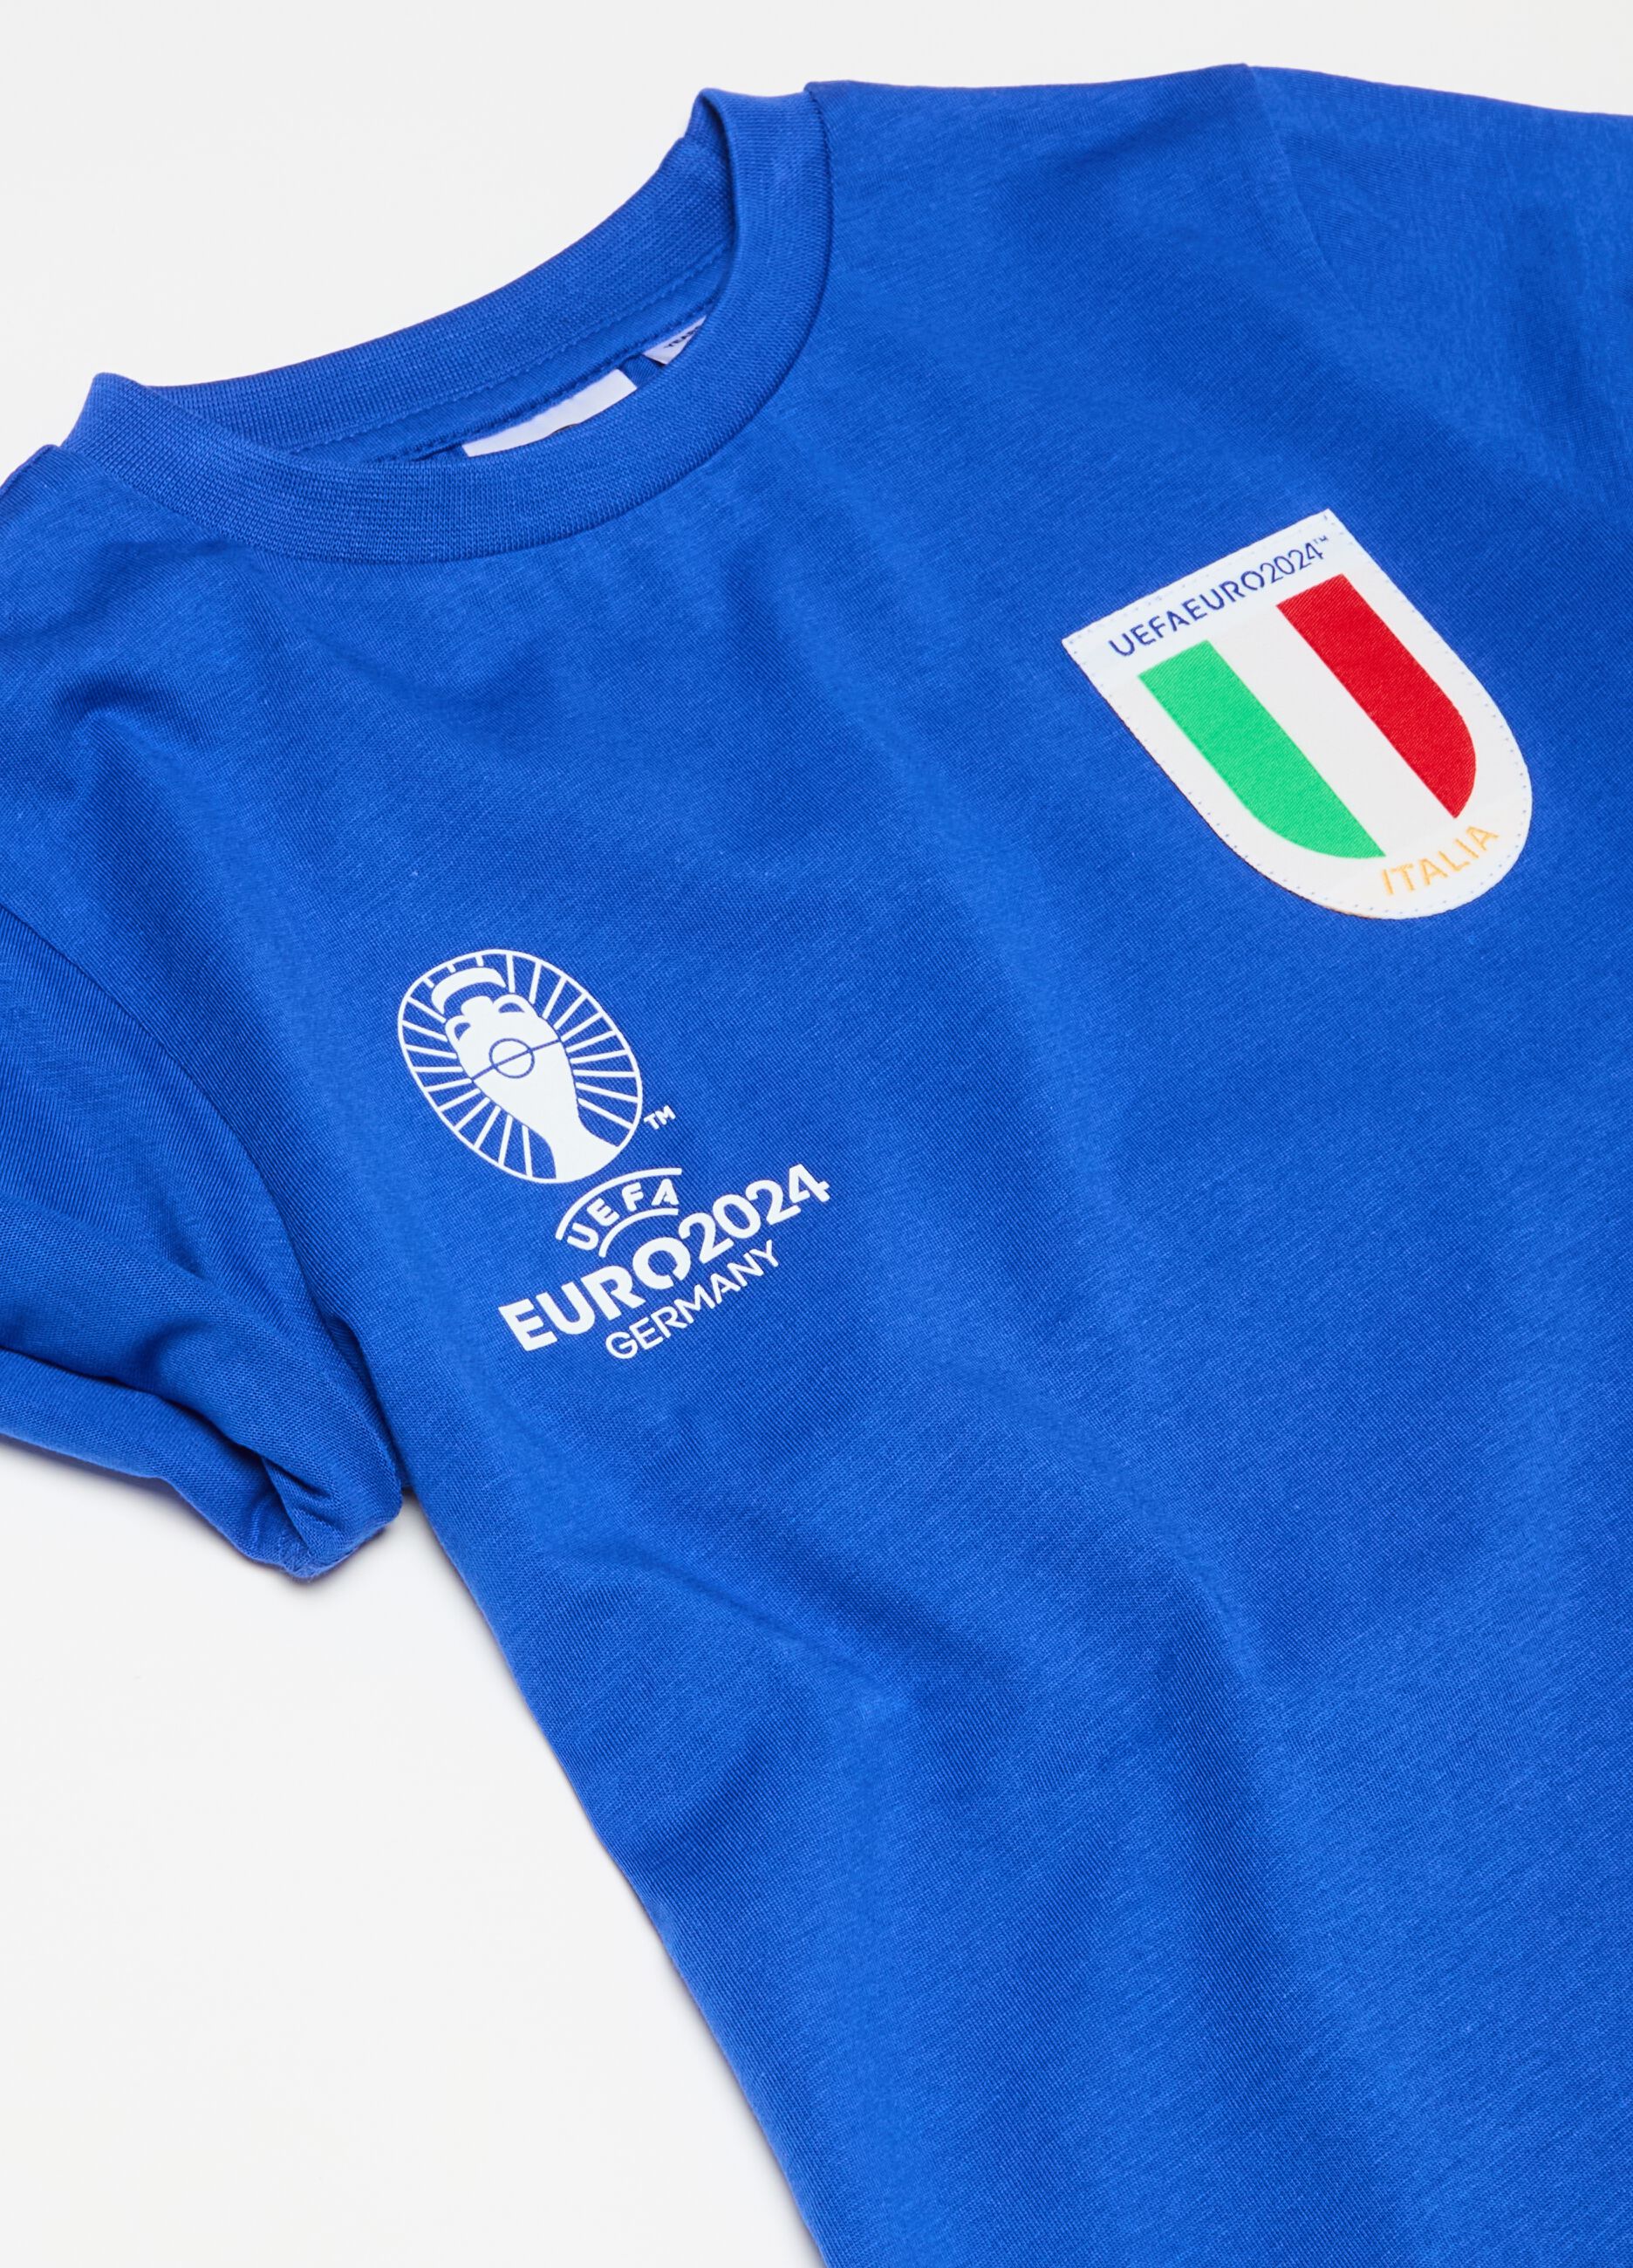 Camiseta estampado UEFA Euro 2024 Italia